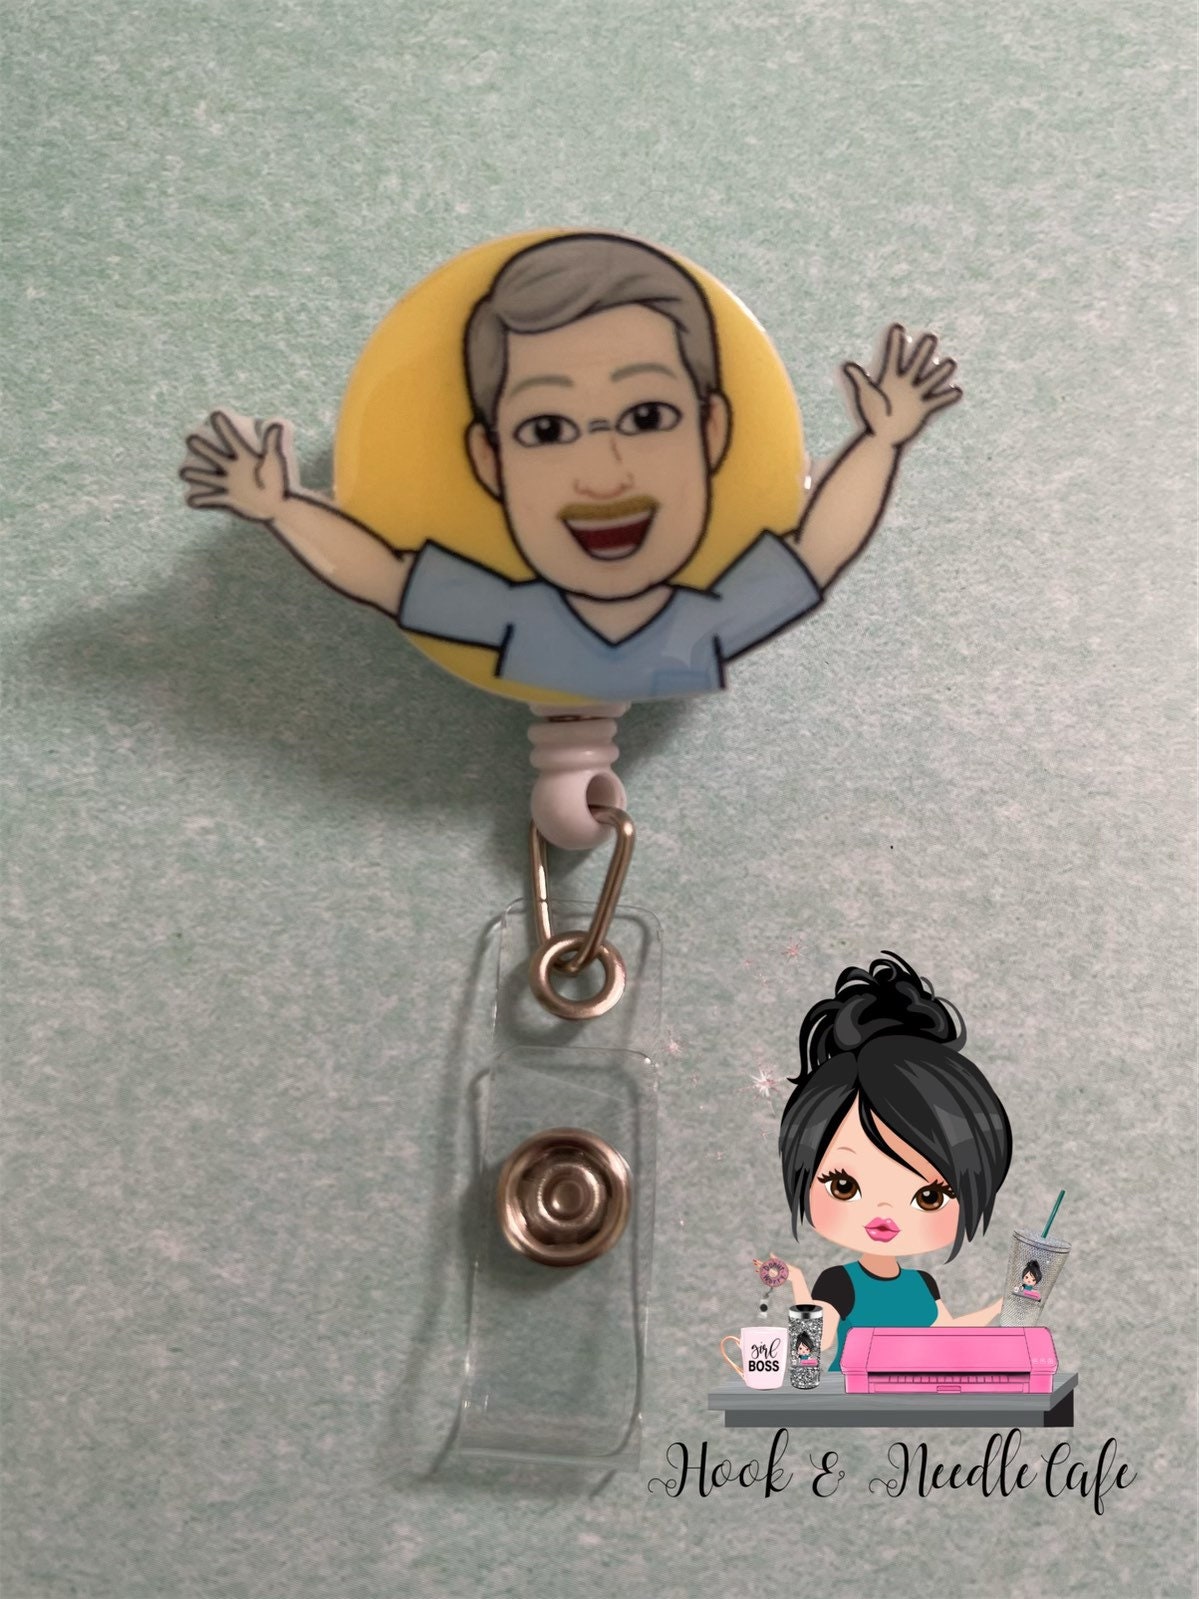 Bitmoji Badge Reel - Bitmoji - Cute Badge Holder - Personalized - Nurs –  Hook & Needle Cafe